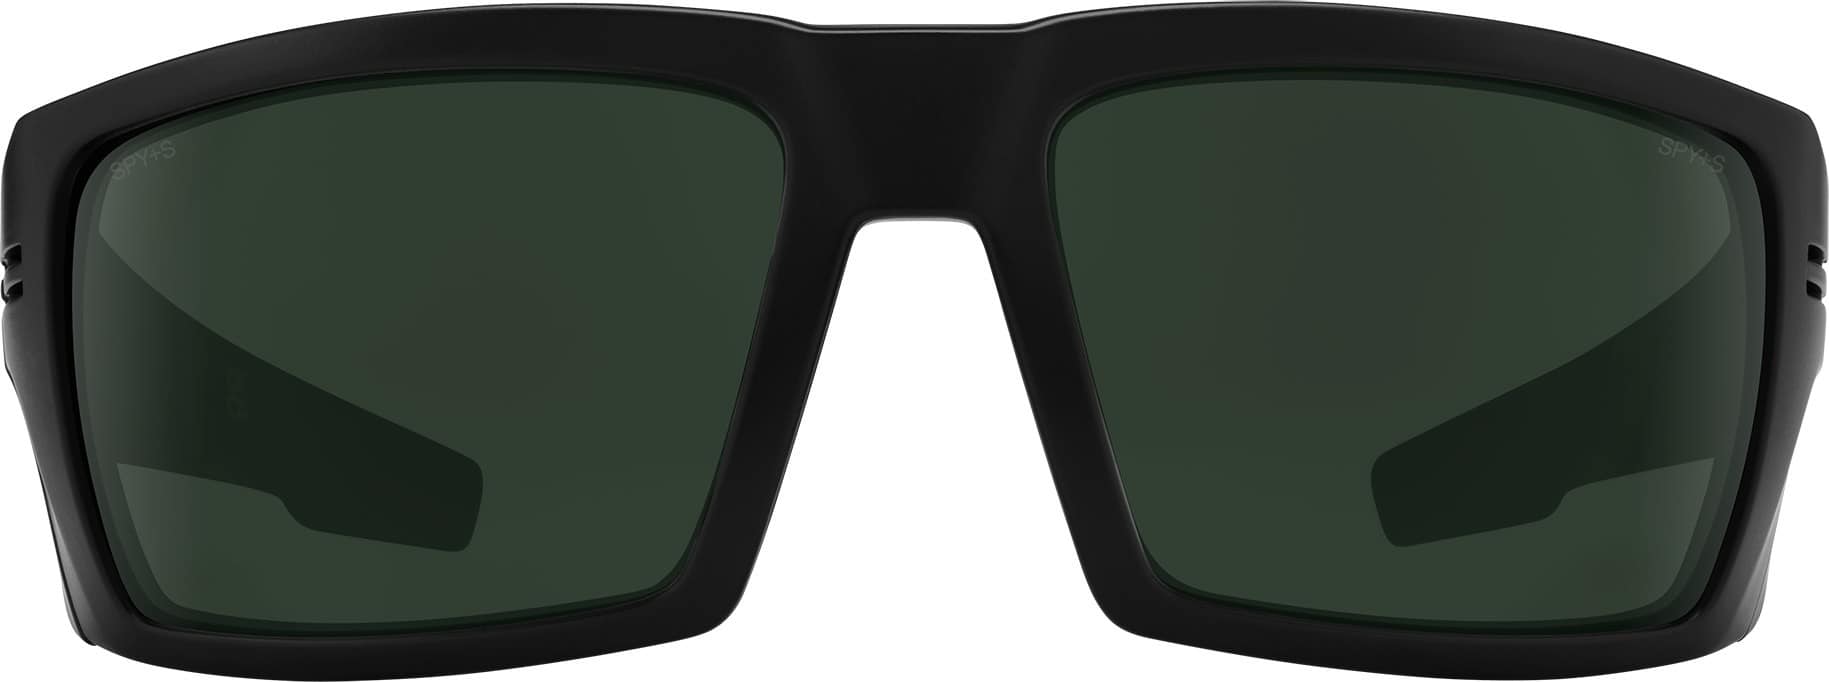 Spy Rebar Sunglasses - matte black/happy gray green lens | Tactics